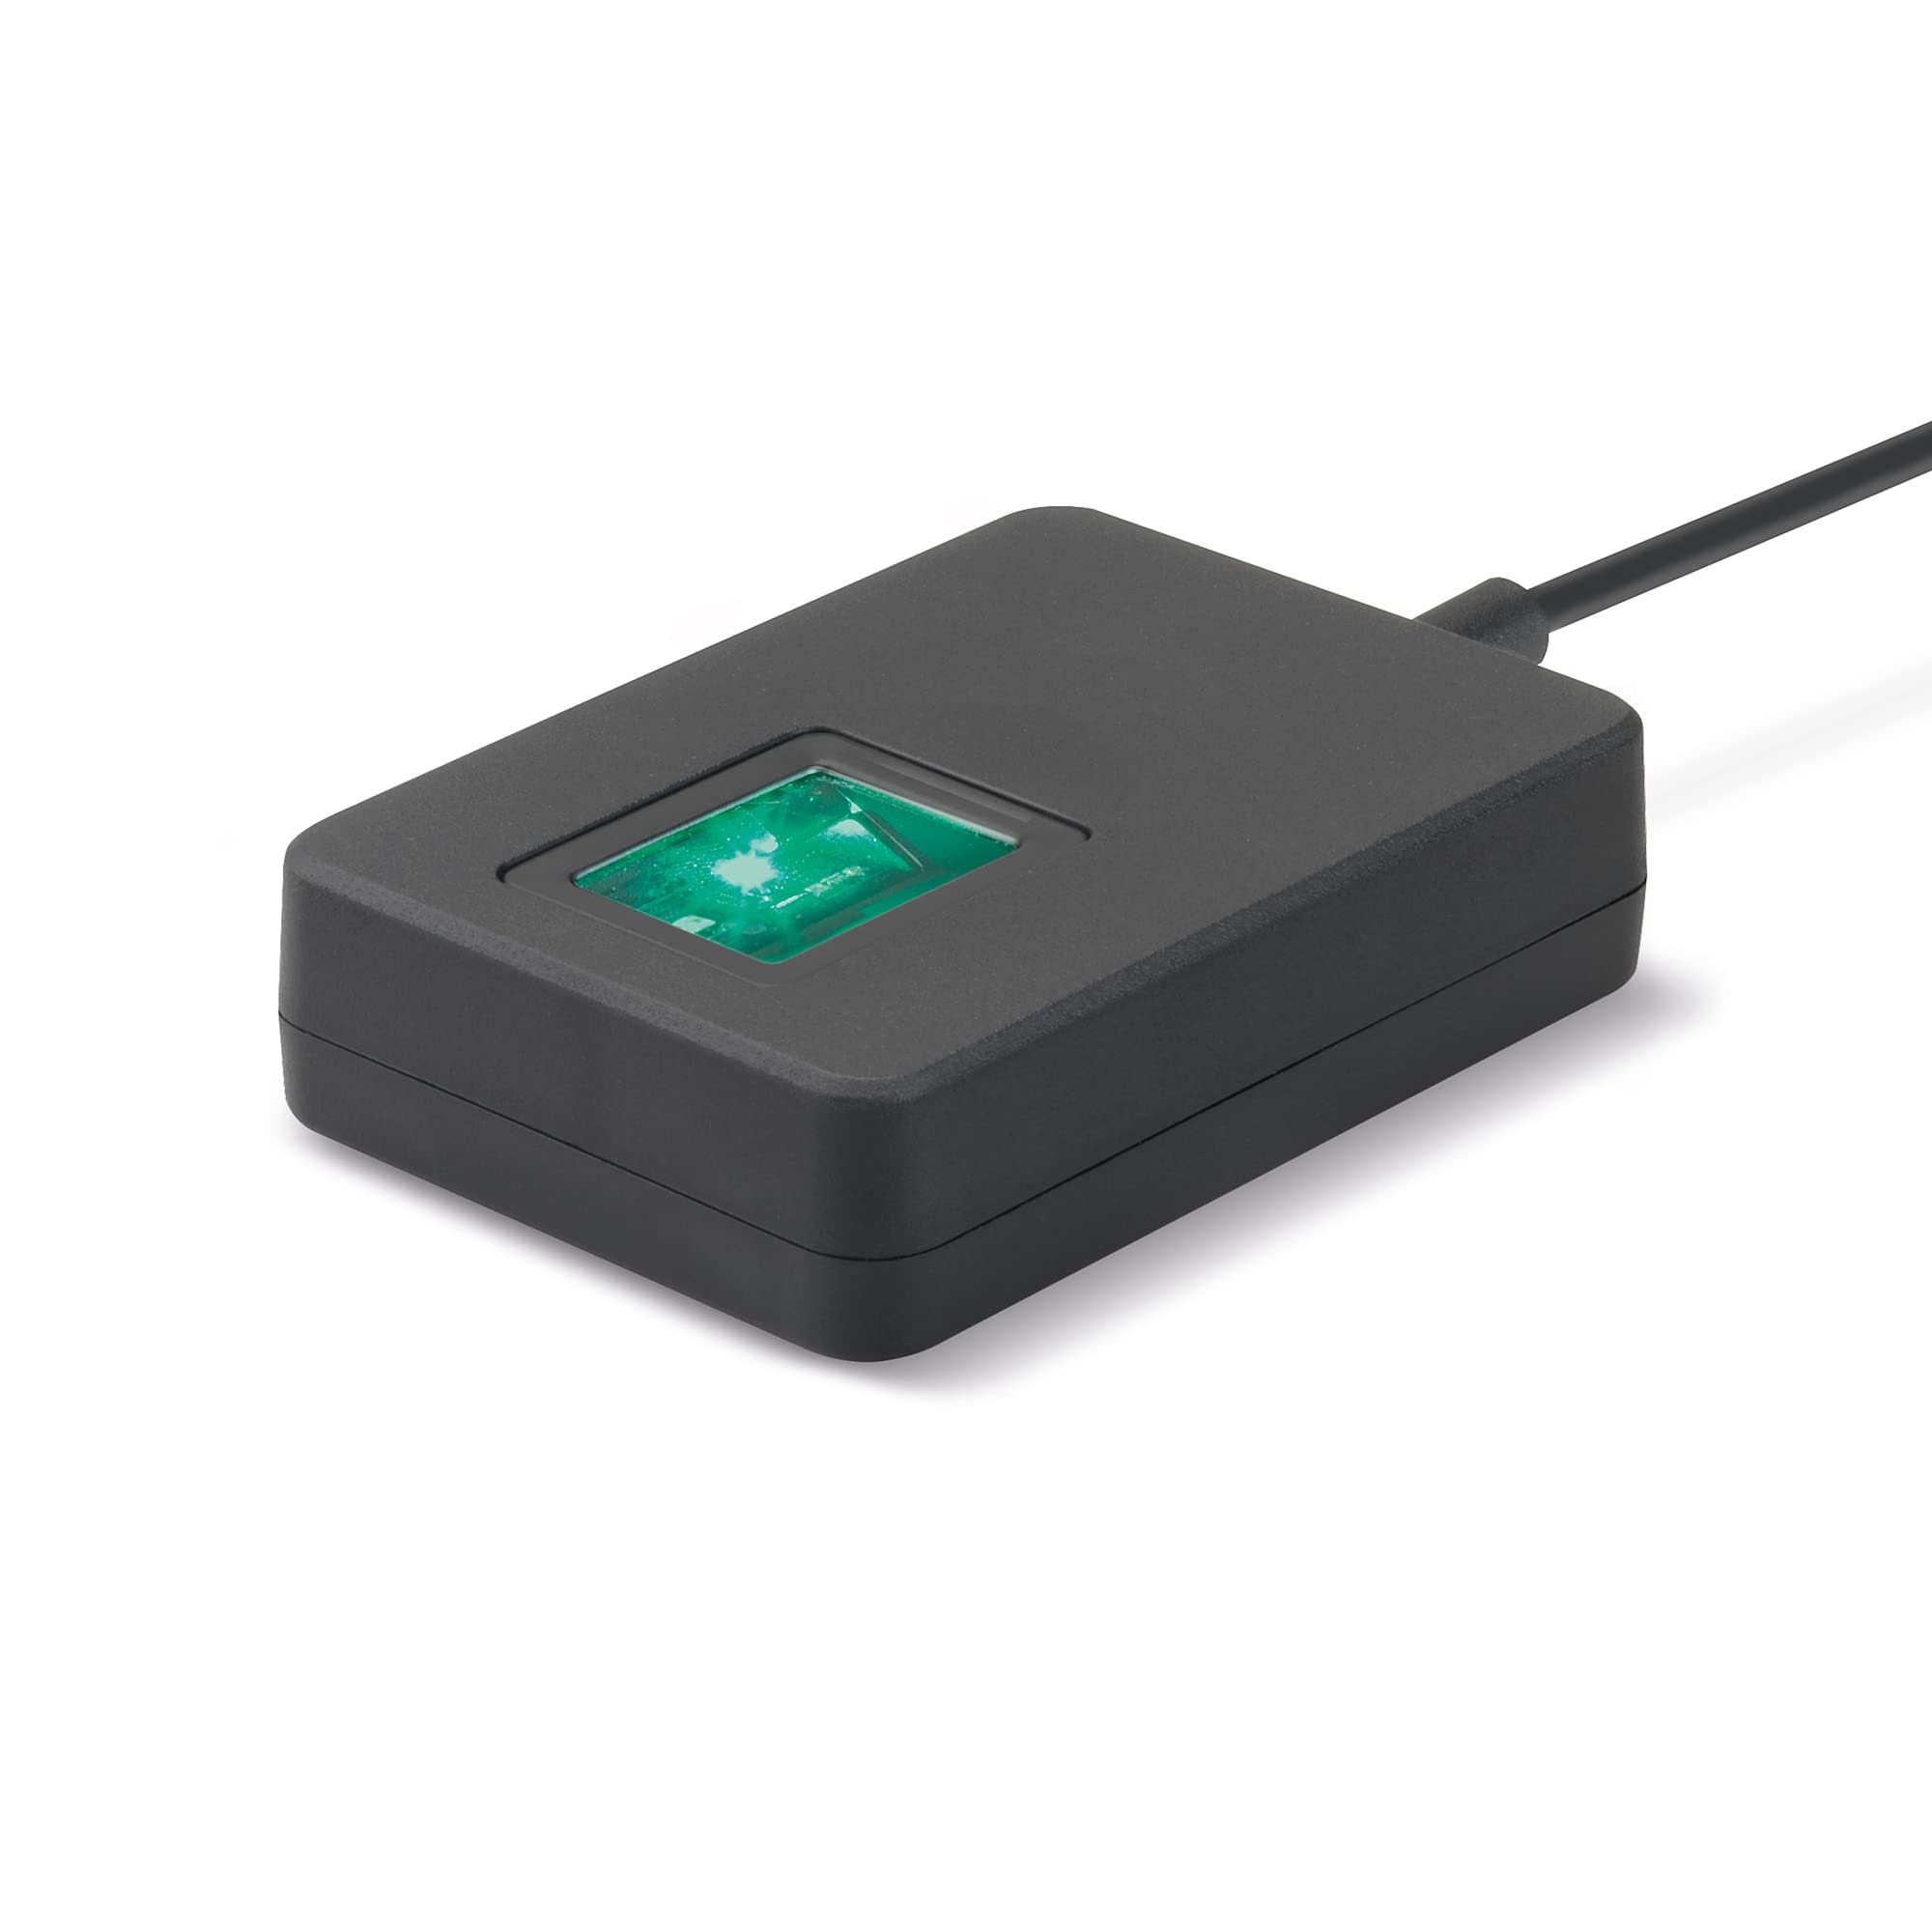 Safescan FP-150 - USB-Fingerabdruckleser zum einfachen Registrieren von Fingerabdrücken am PC, 125-0644